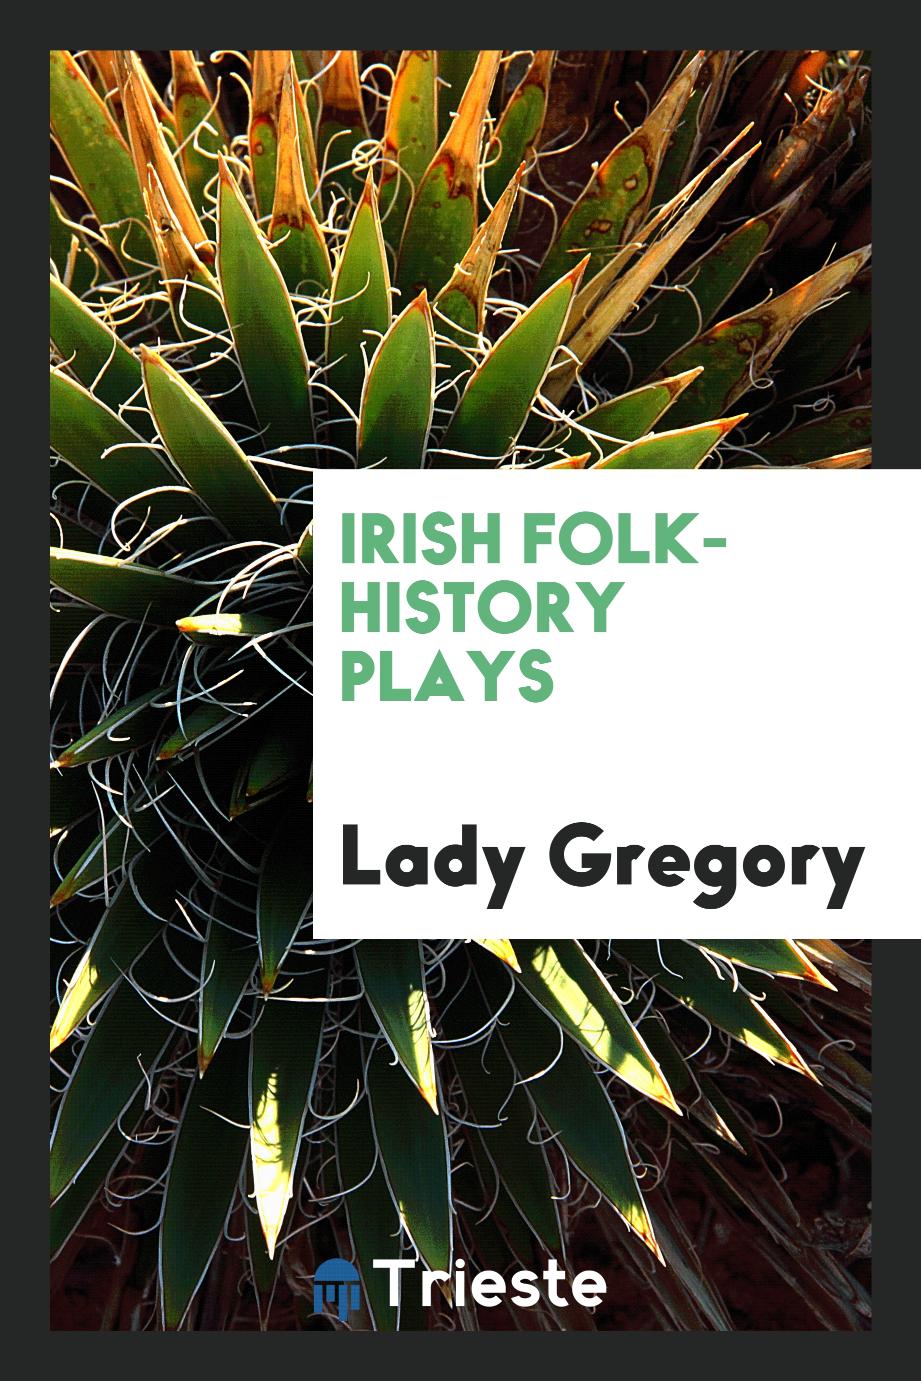 Irish folk-history plays